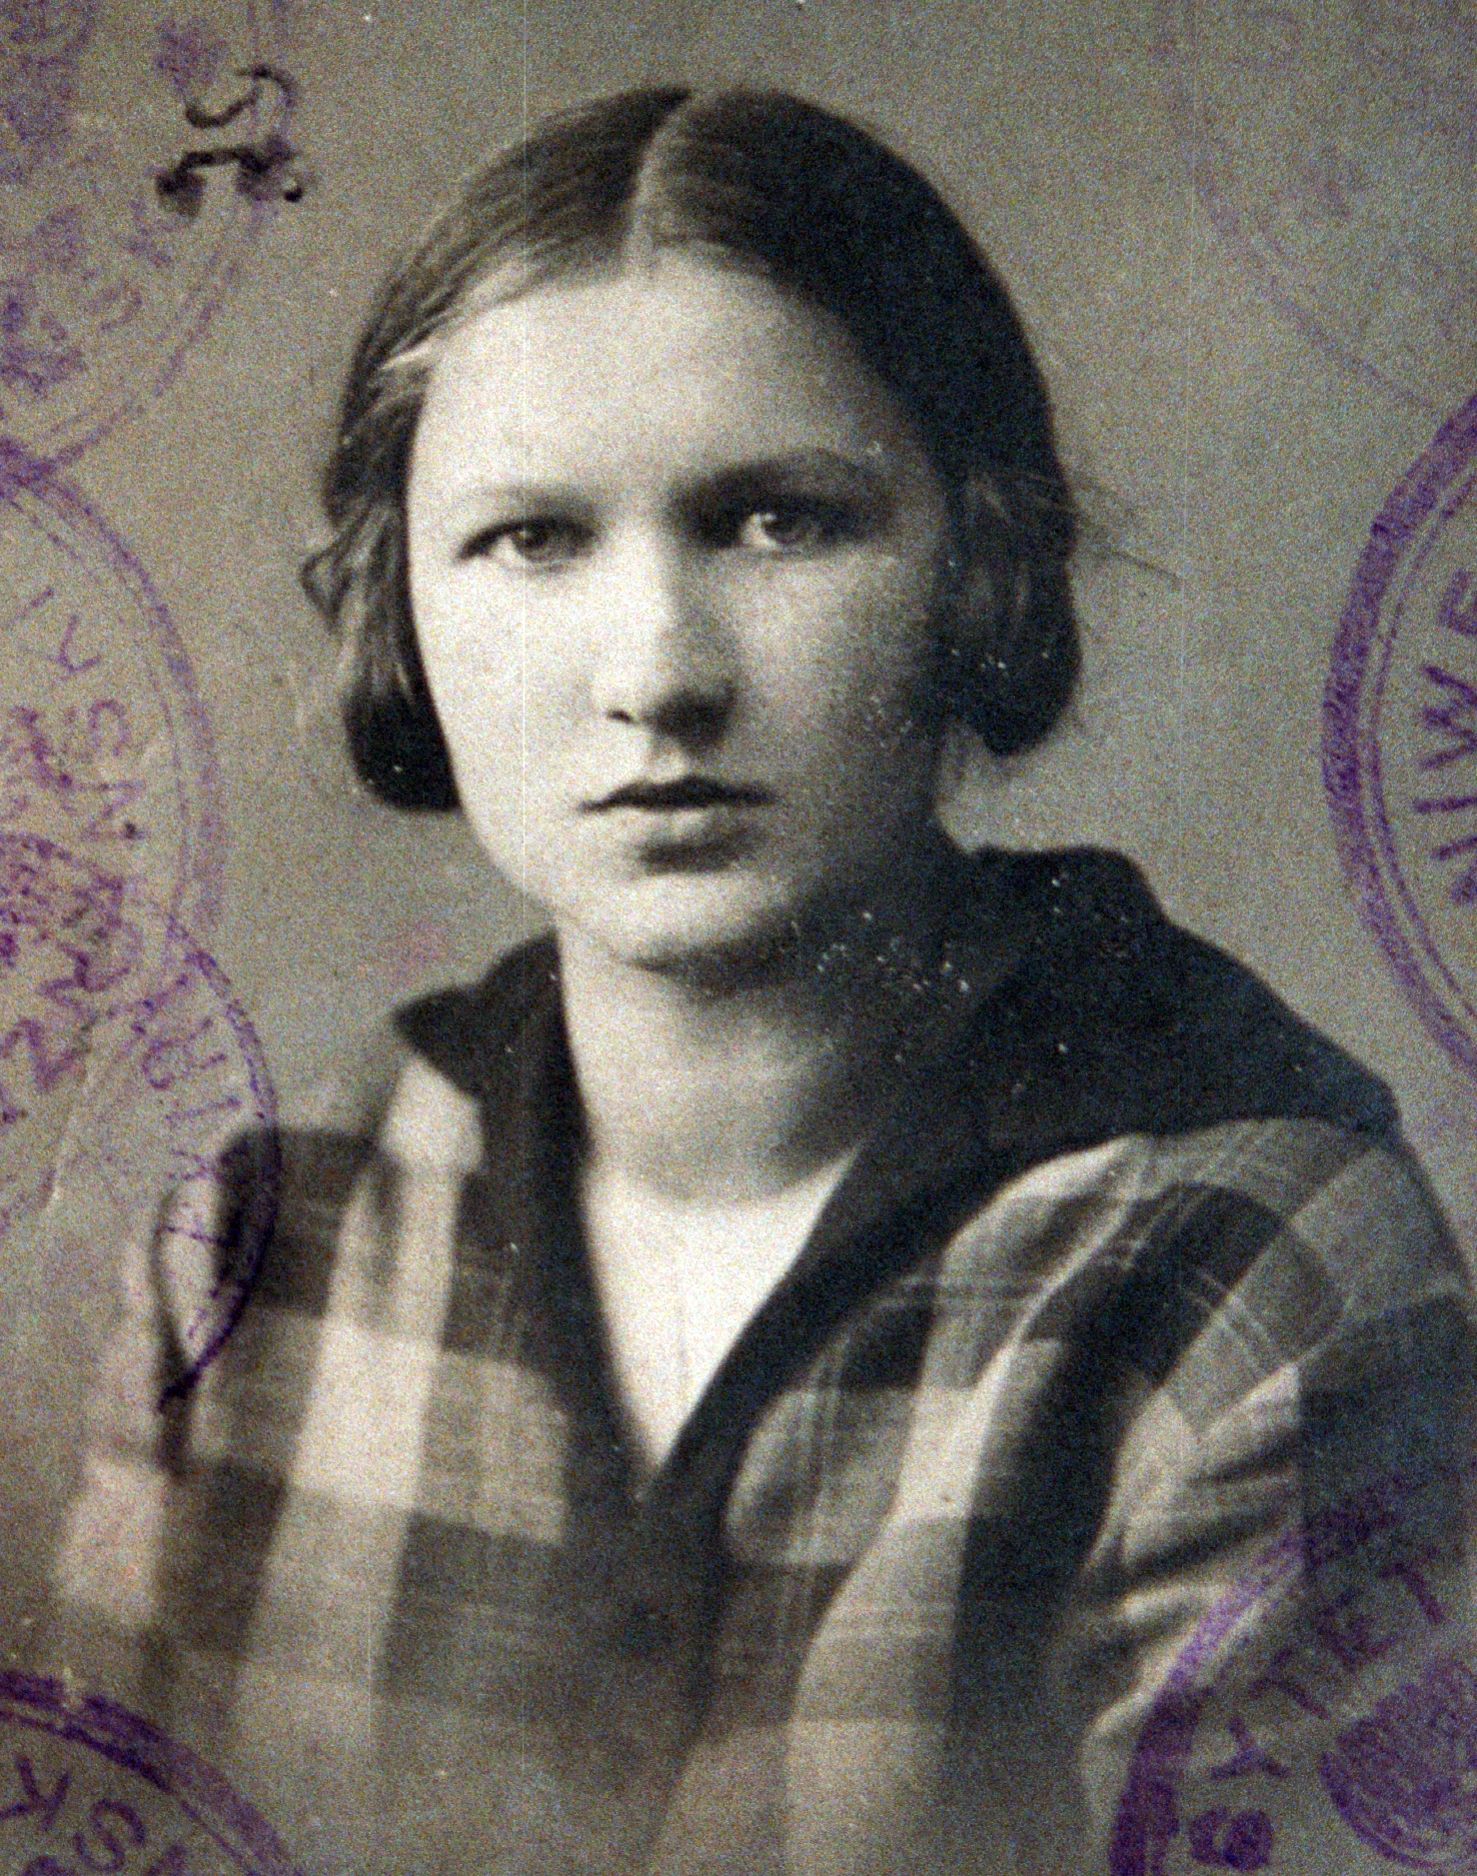 Elzbieta Zawacka "Zo". Fotografia pochodzi z książki "Wielka Księga Armii Krajowej" (Znak Horyzont 2015).